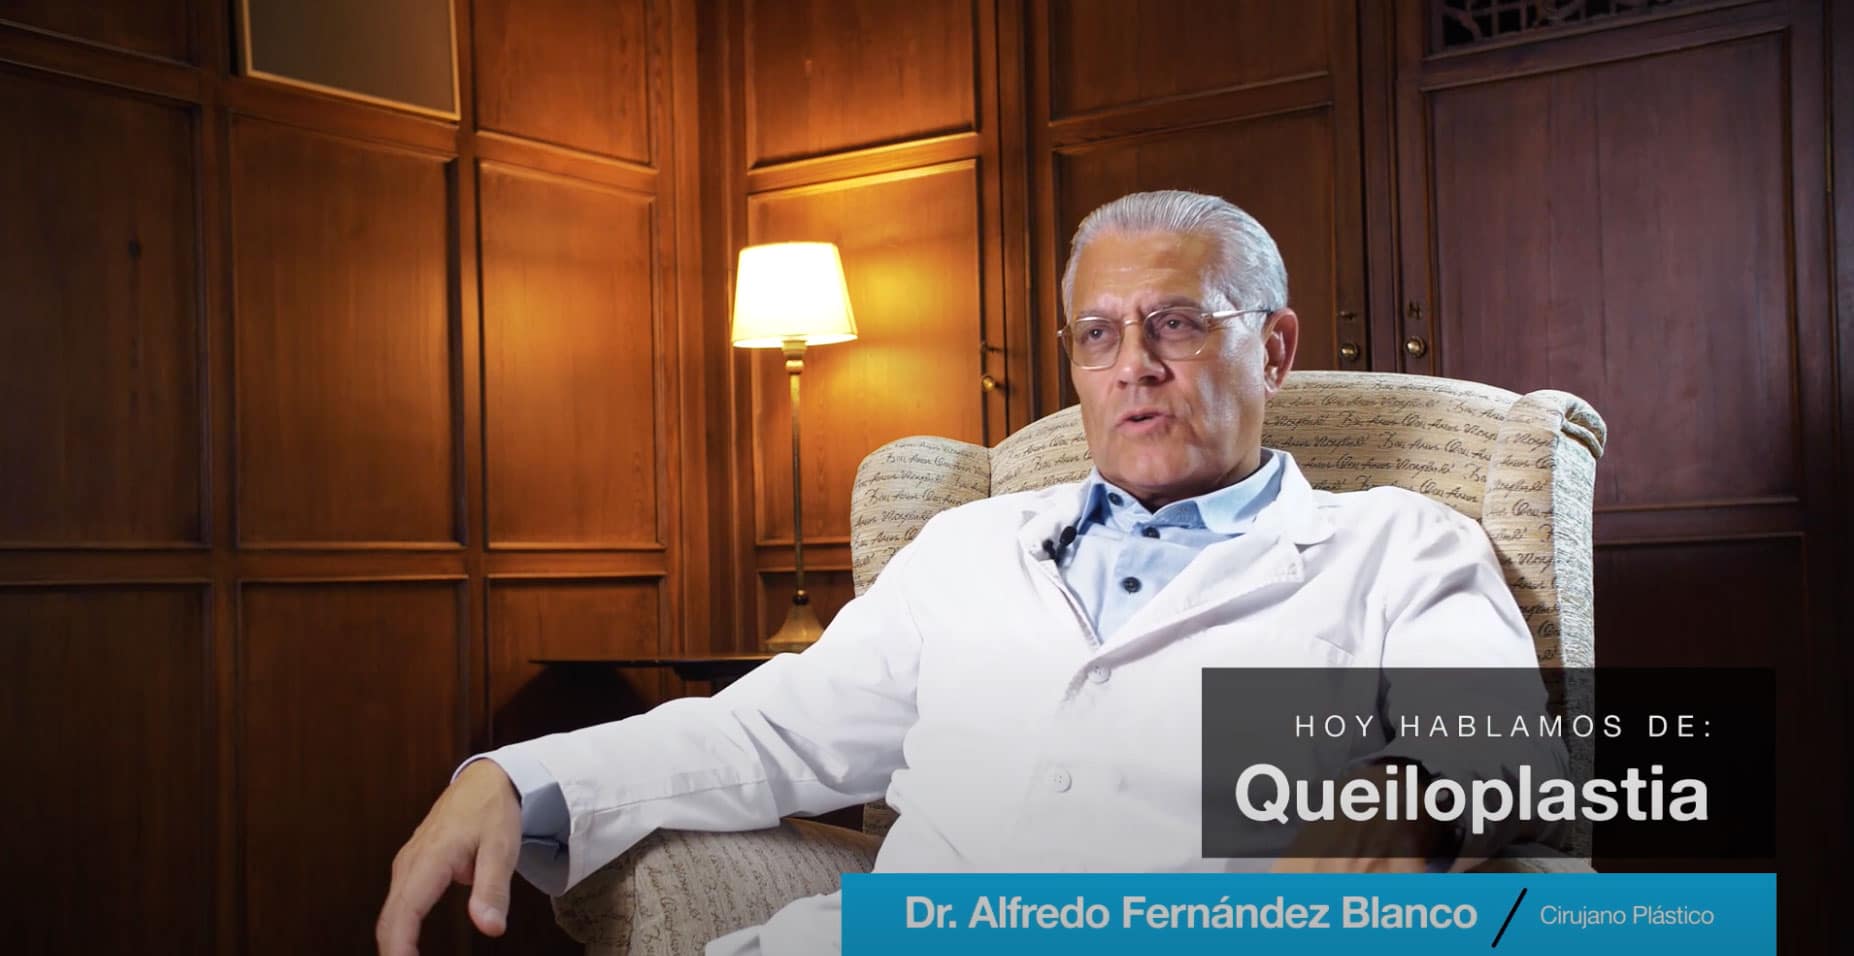 Videoblog del Dr. Fernández Blanco acerca de la extracción de silicona mediante una queiloplastia